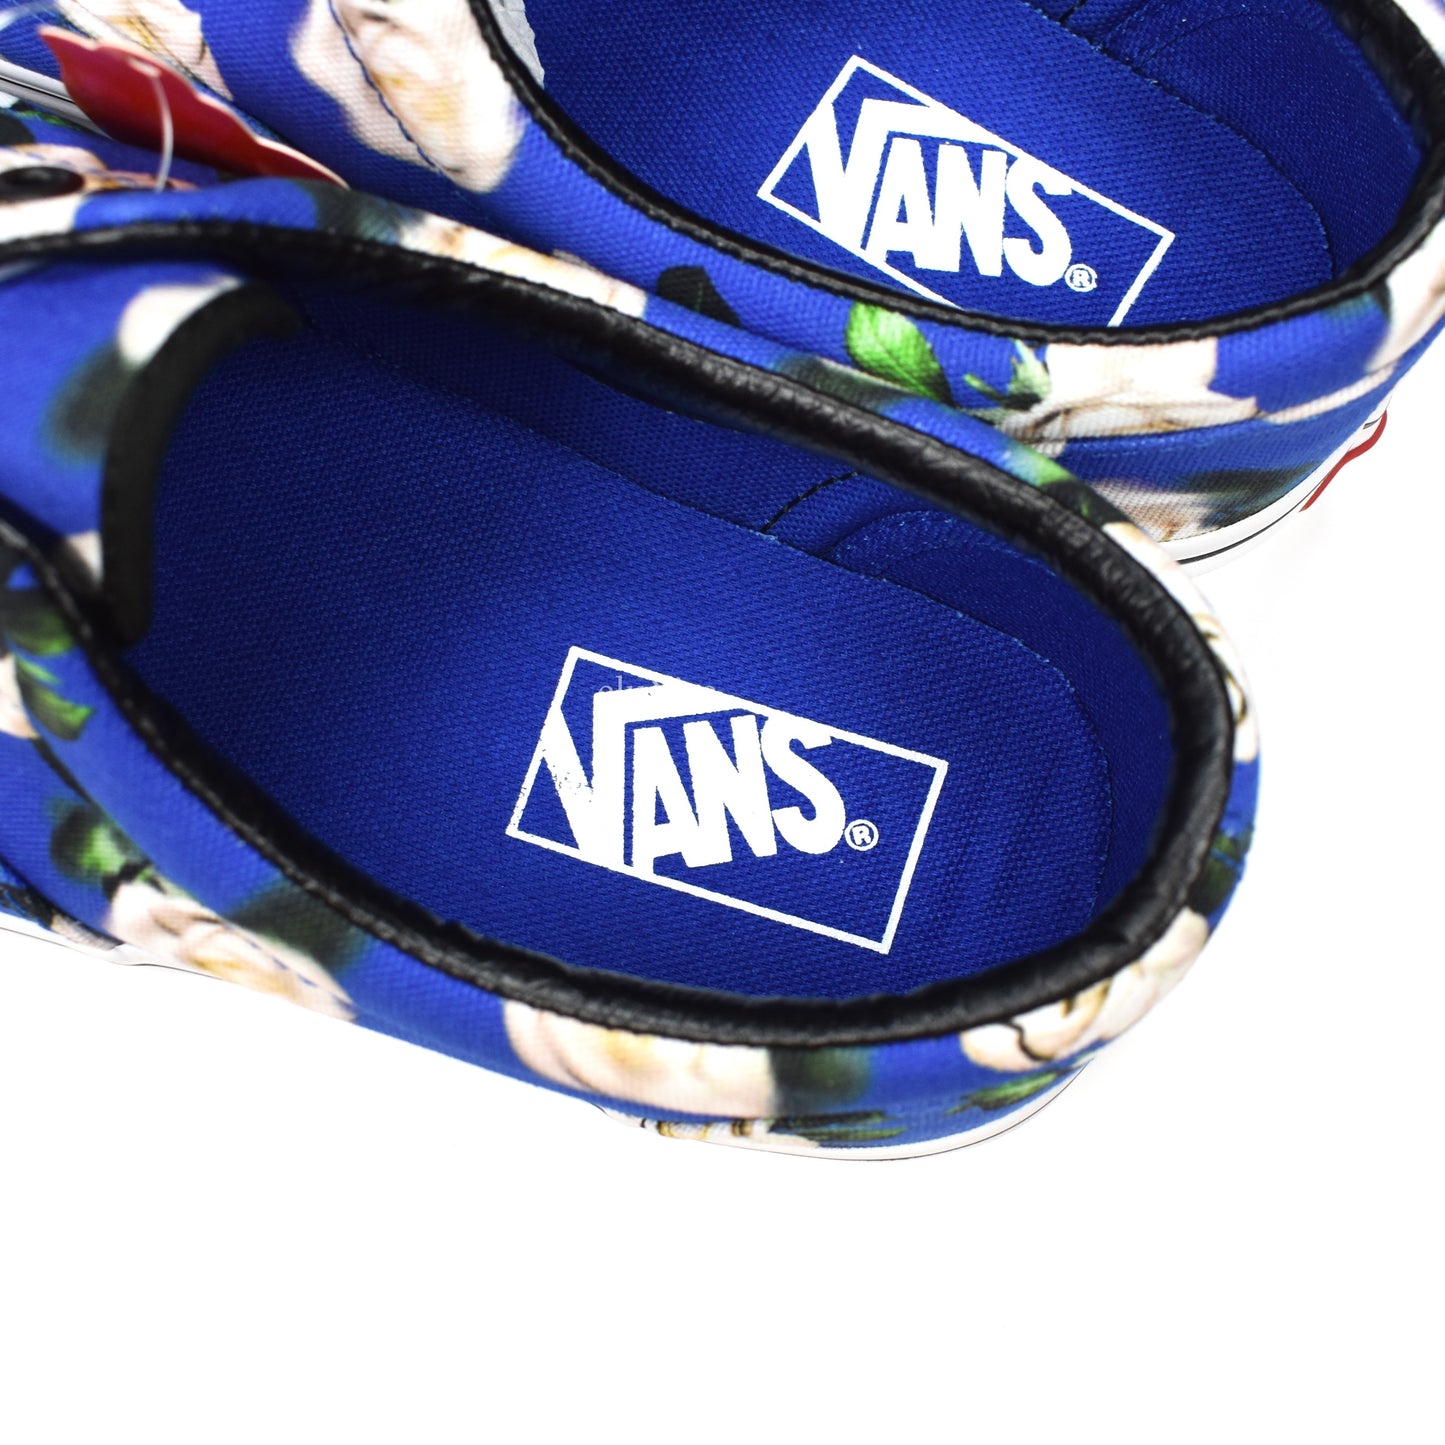 Vans - Blue Floral Era Sneakers